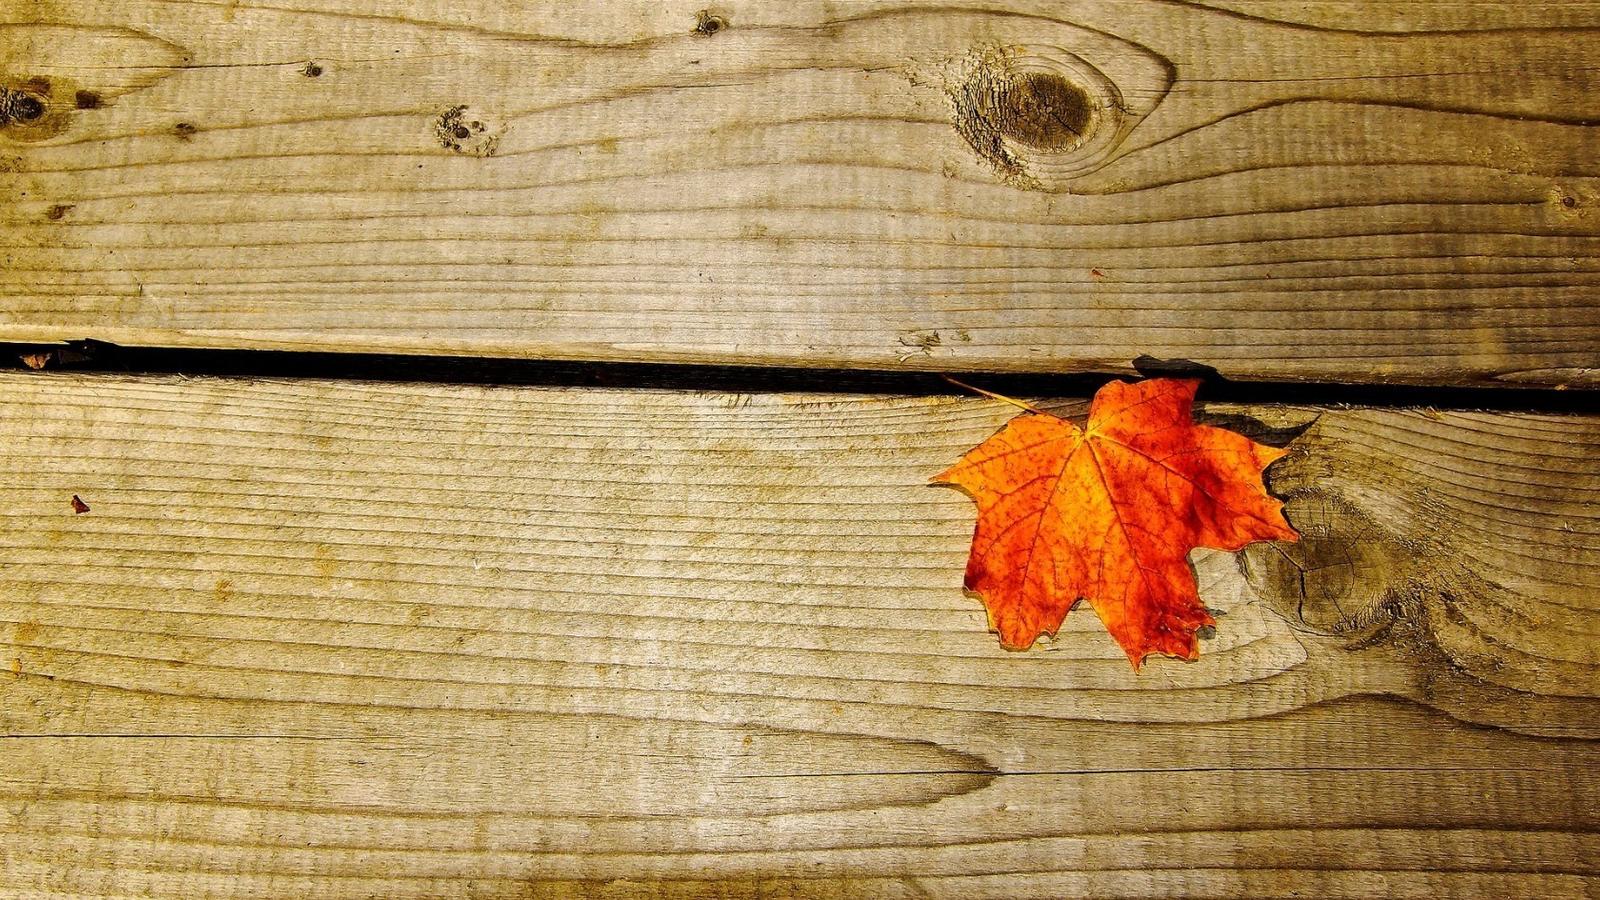 Rusty leaf on a piece of wood